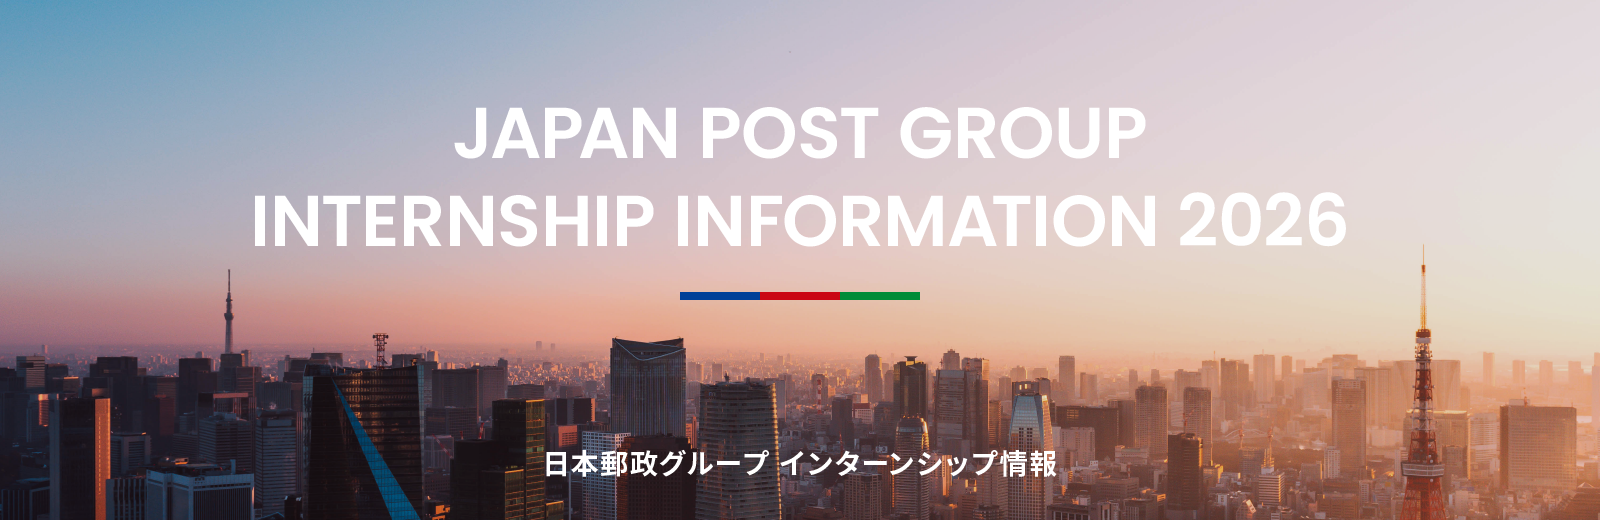 日本郵政グループ インターンシップ情報2026